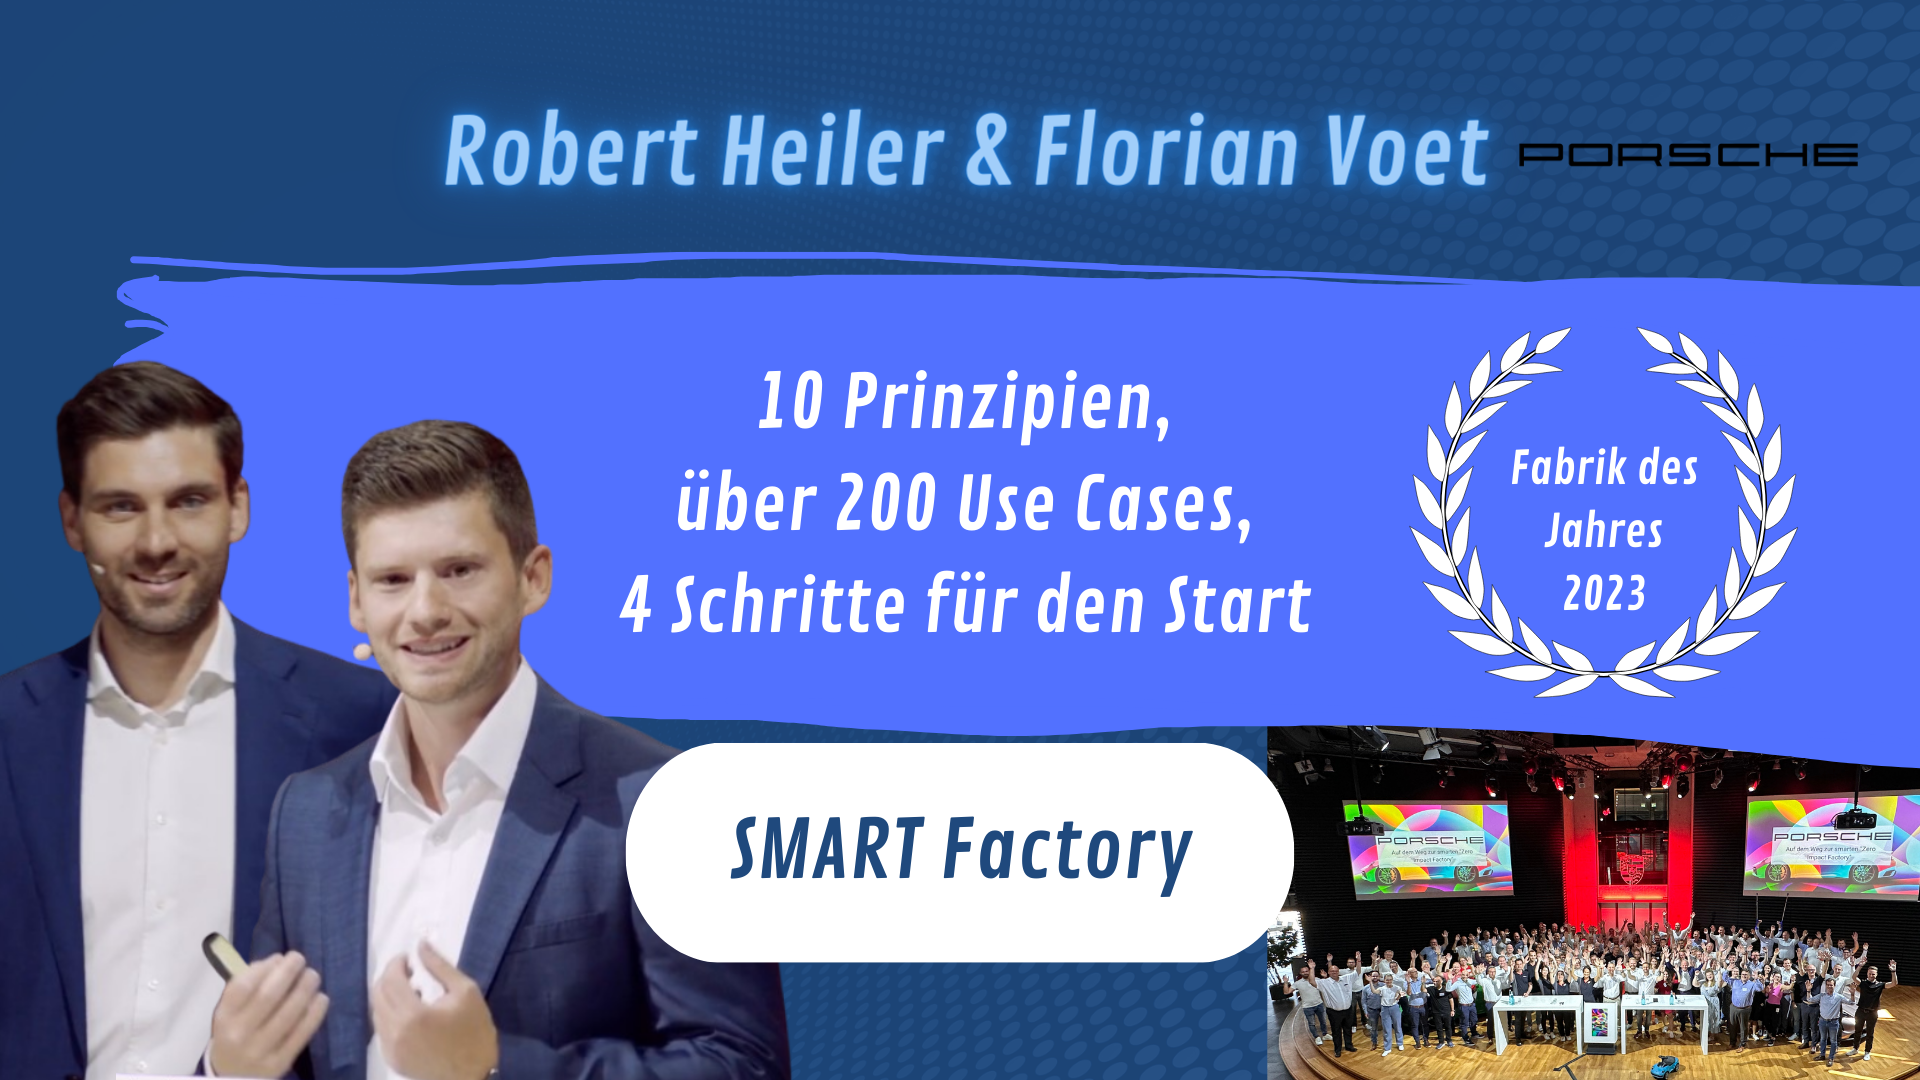 DIGITAL - SMART Factory with Robert Heiler & Florian Voet